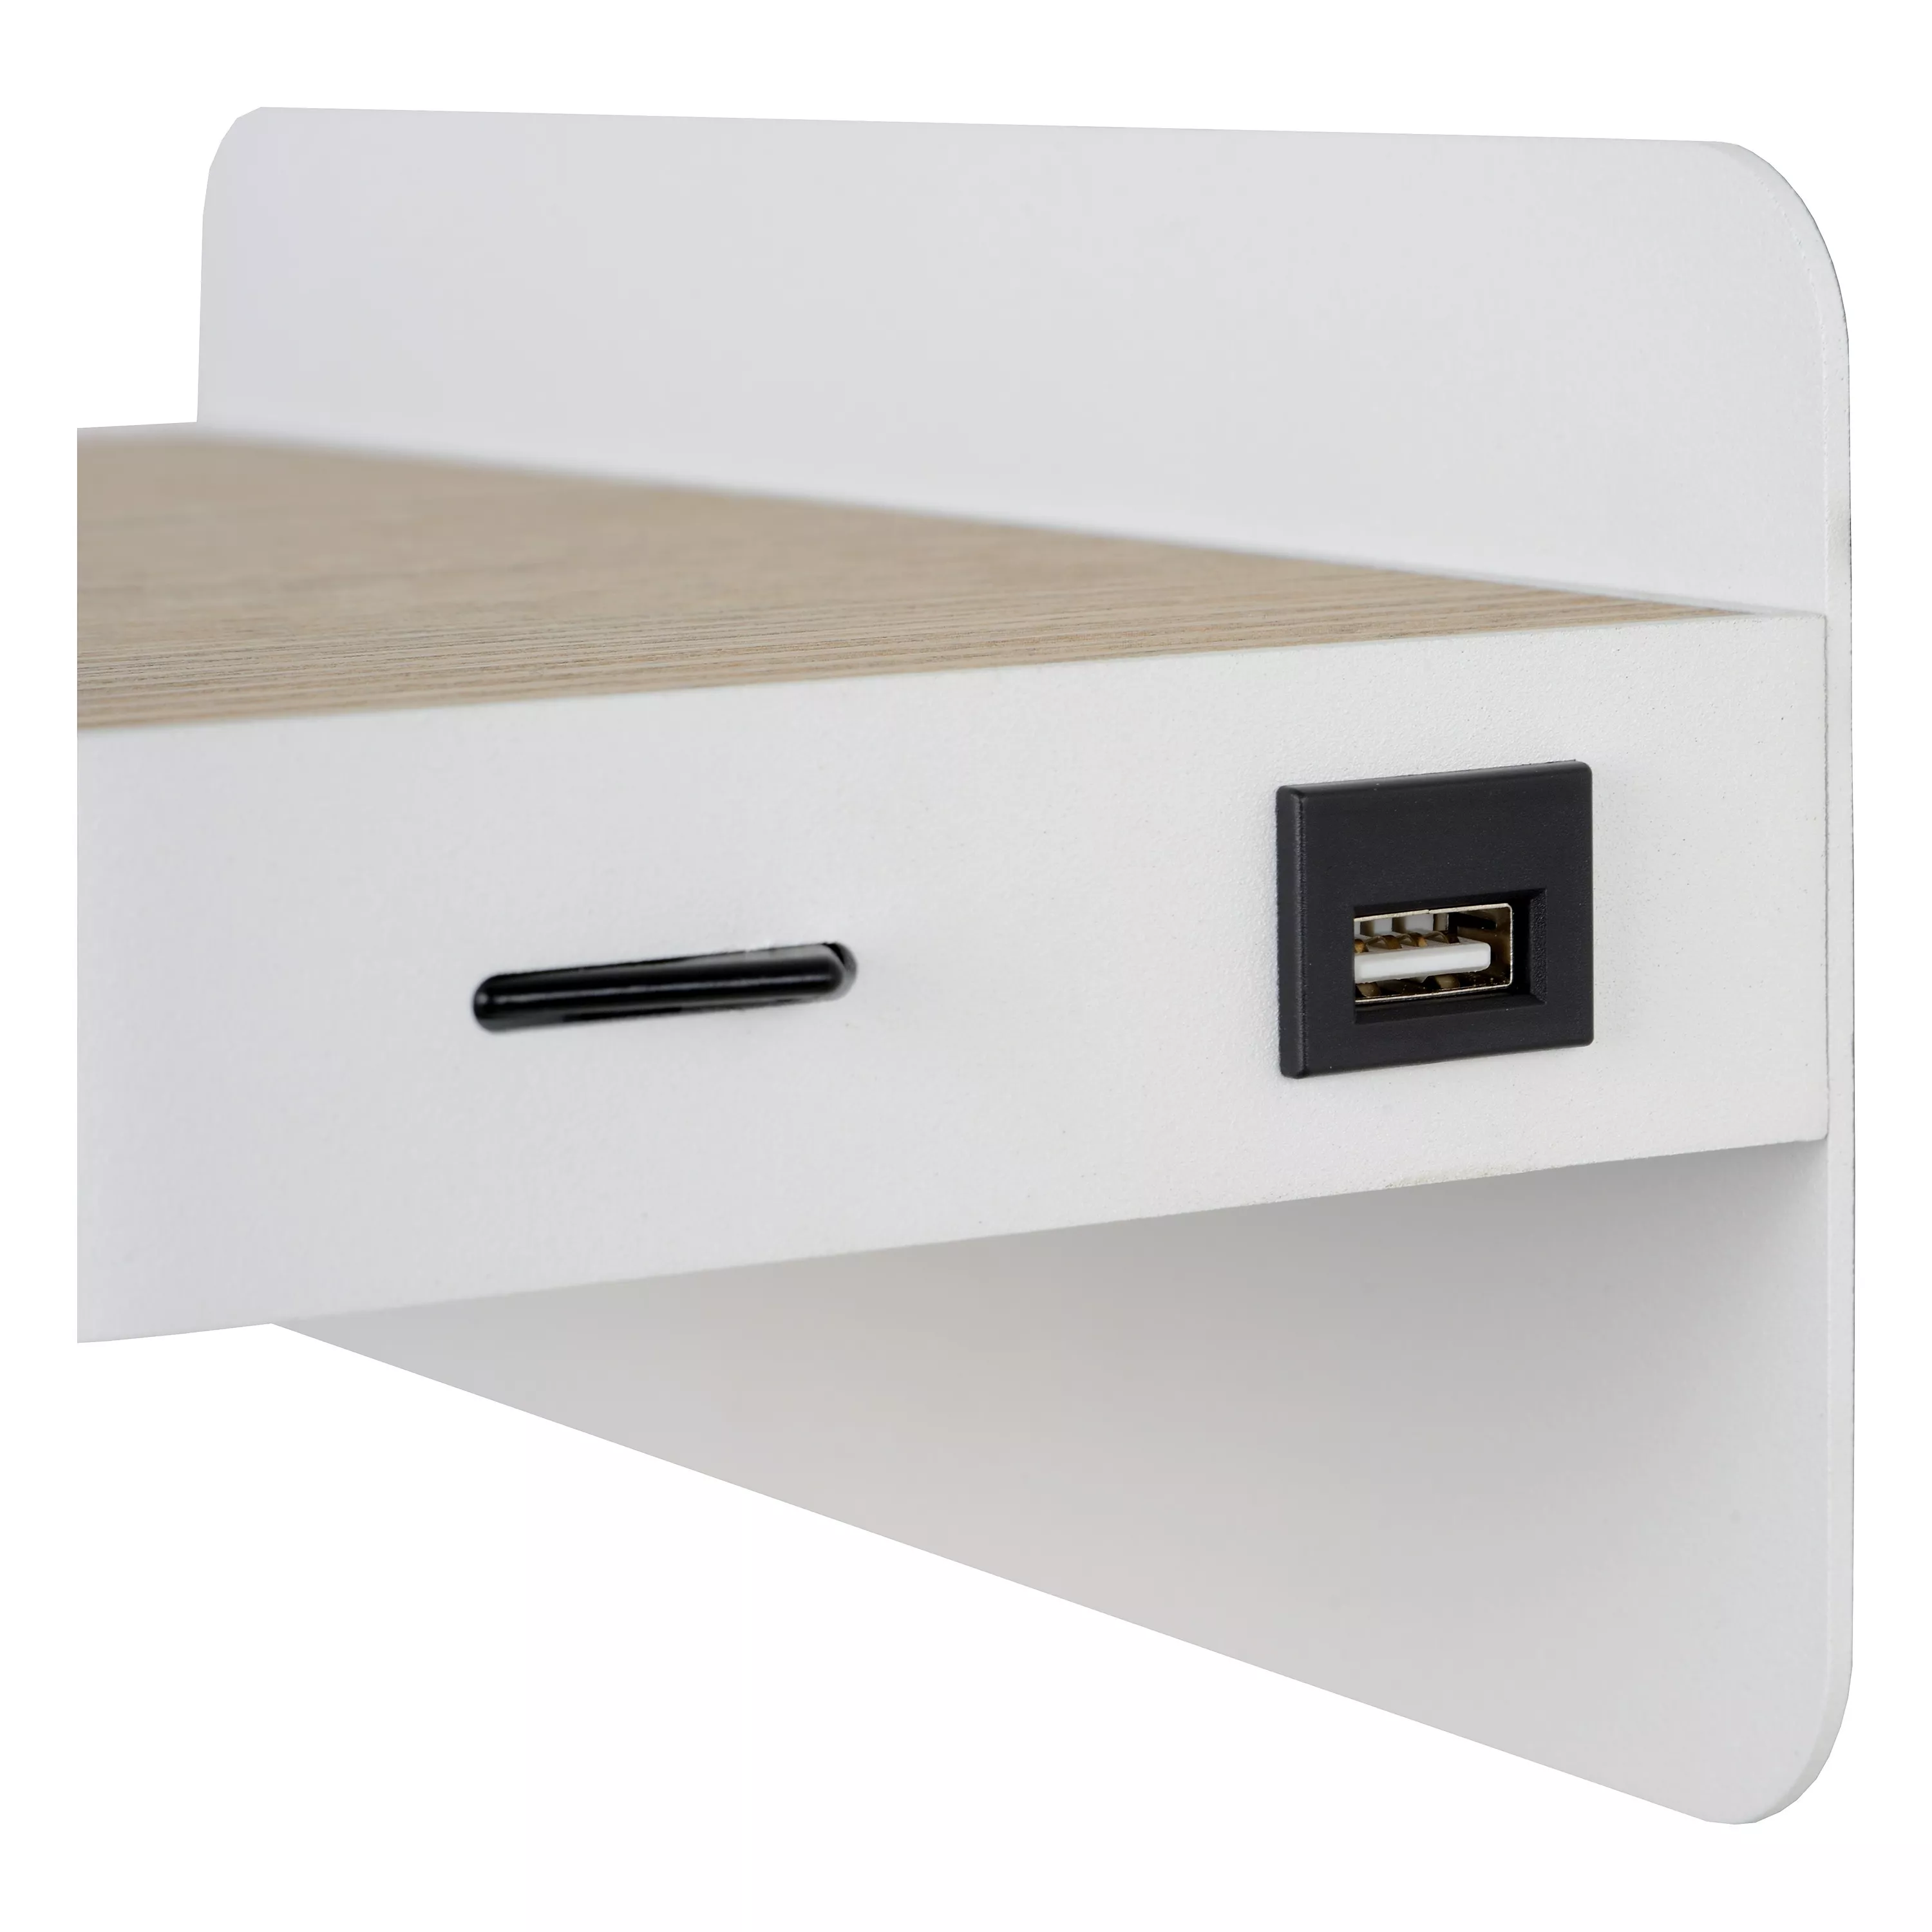 Multifunkčné nástenné svietidlo Atkin v bielej farbe so skrytým zdrojom a zabudovaným USB portom.